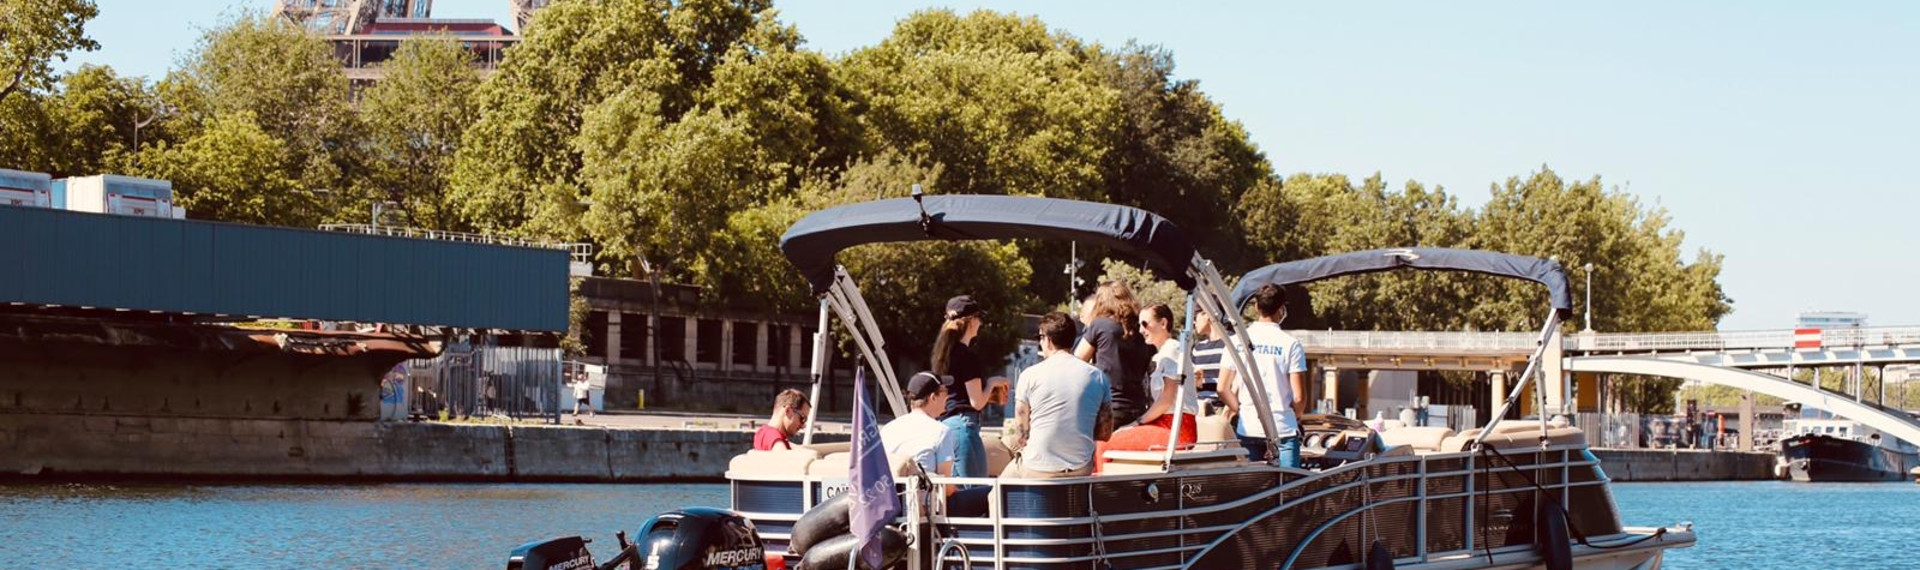 Erlebt Paris vom Wasser aus | JGA-Bootstour auf der Seine | Pissup Reisen